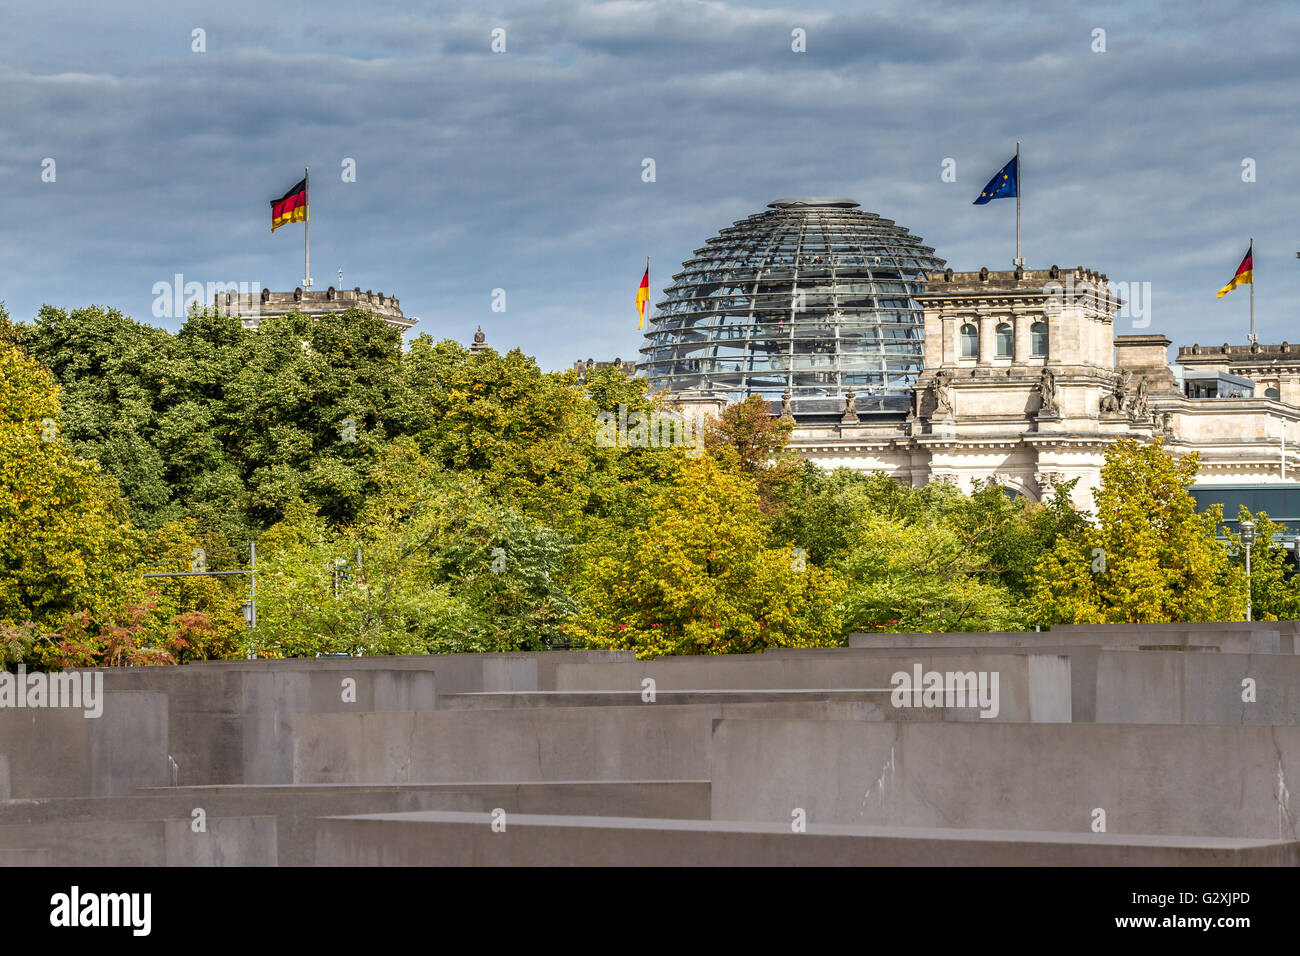 El edificio Reichstag del monumento conmemorativo del Holocausto que alberga el Bundestag alemán con una gran cúpula de cristal diseñada por Sir Norman Foster, Berlín Foto de stock